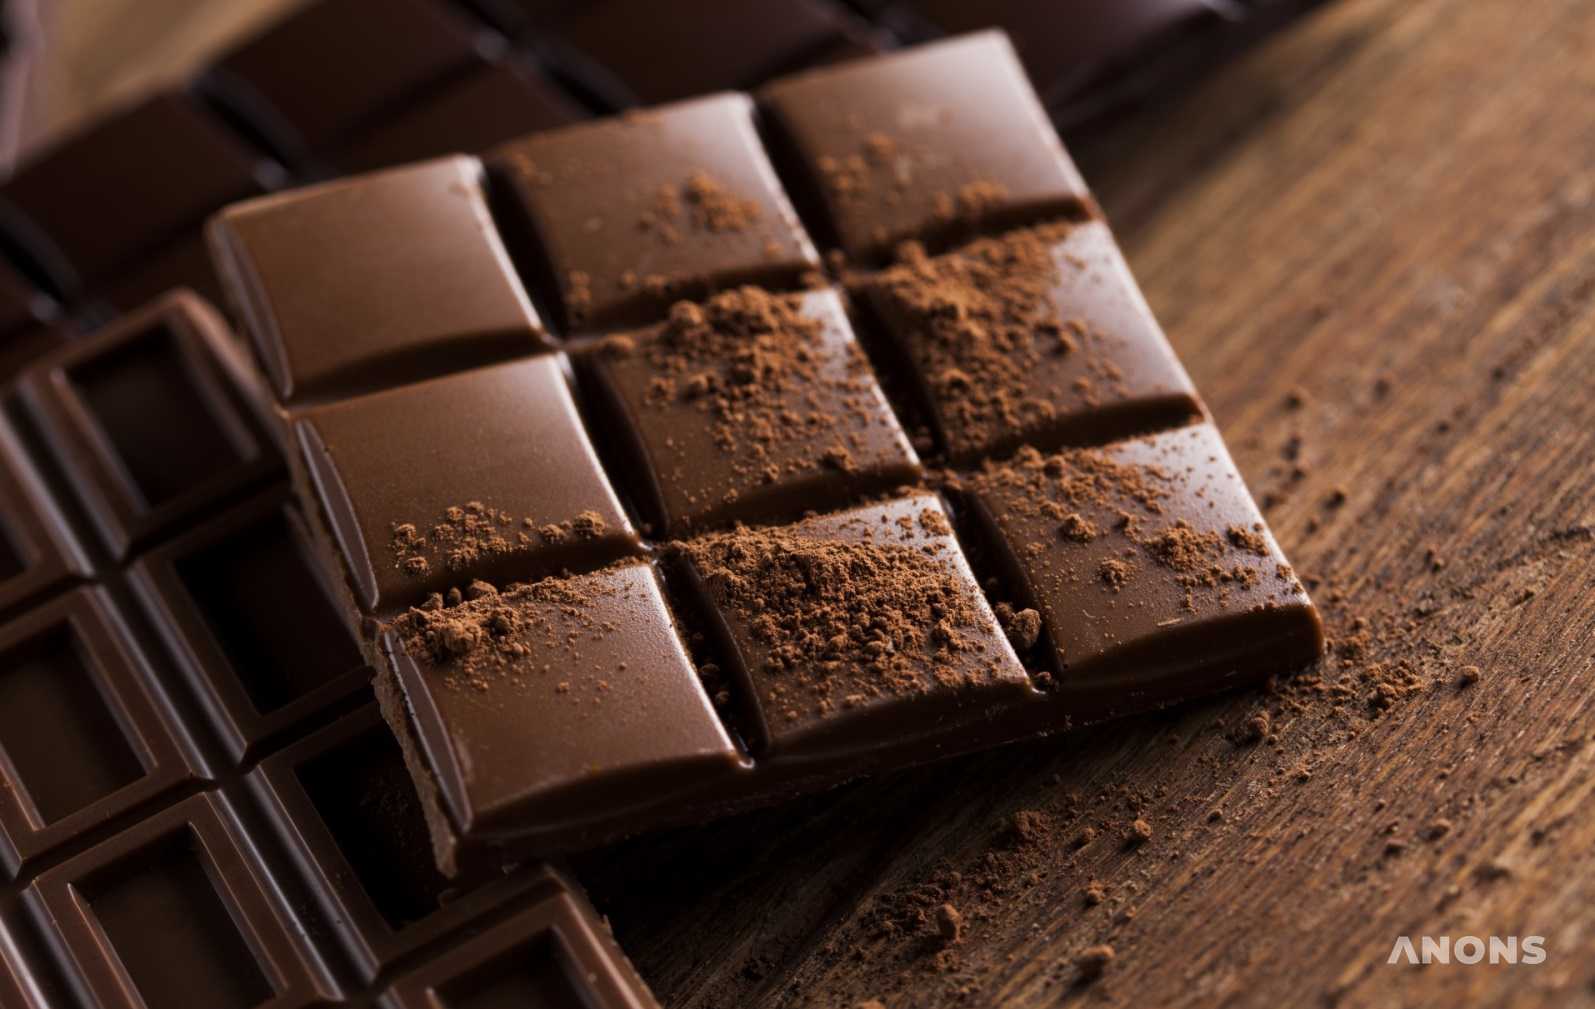 10 интересных фактов о шоколаде